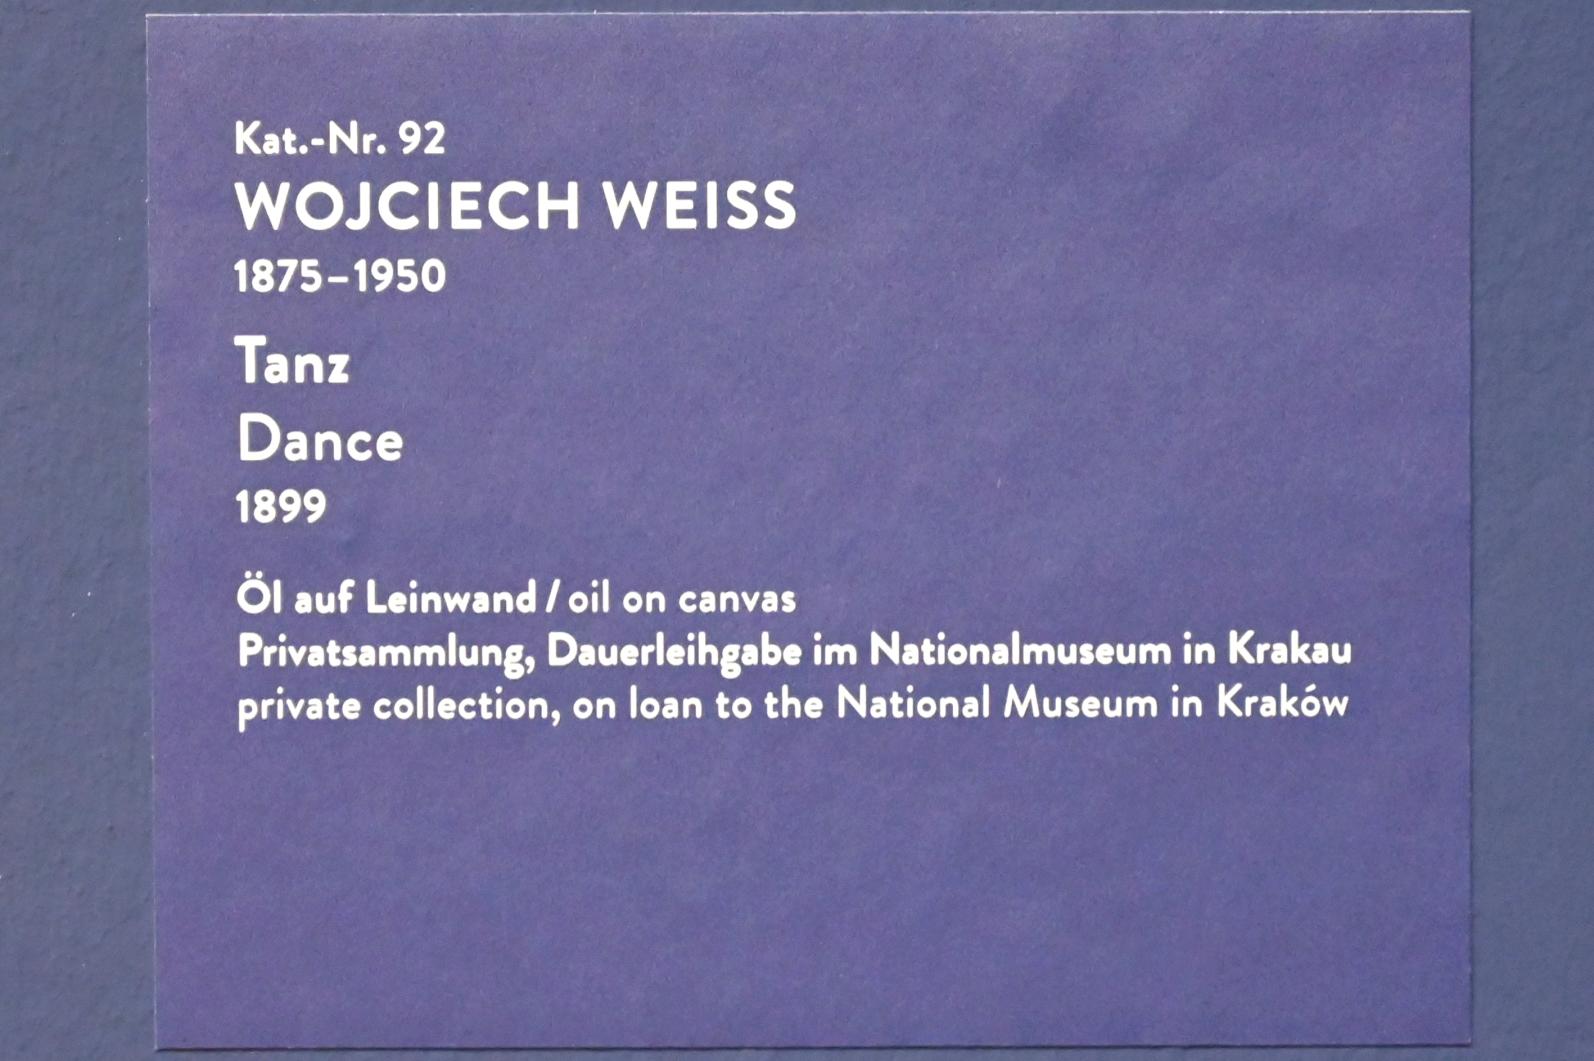 Wojciech Weiss (1898–1923), Tanz, München, Kunsthalle, Ausstellung "Polnischer Symbolismus um 1900" vom 25.03.-07.08.2022, Saal 9 - Die nackte Seele, 1899, Bild 2/2